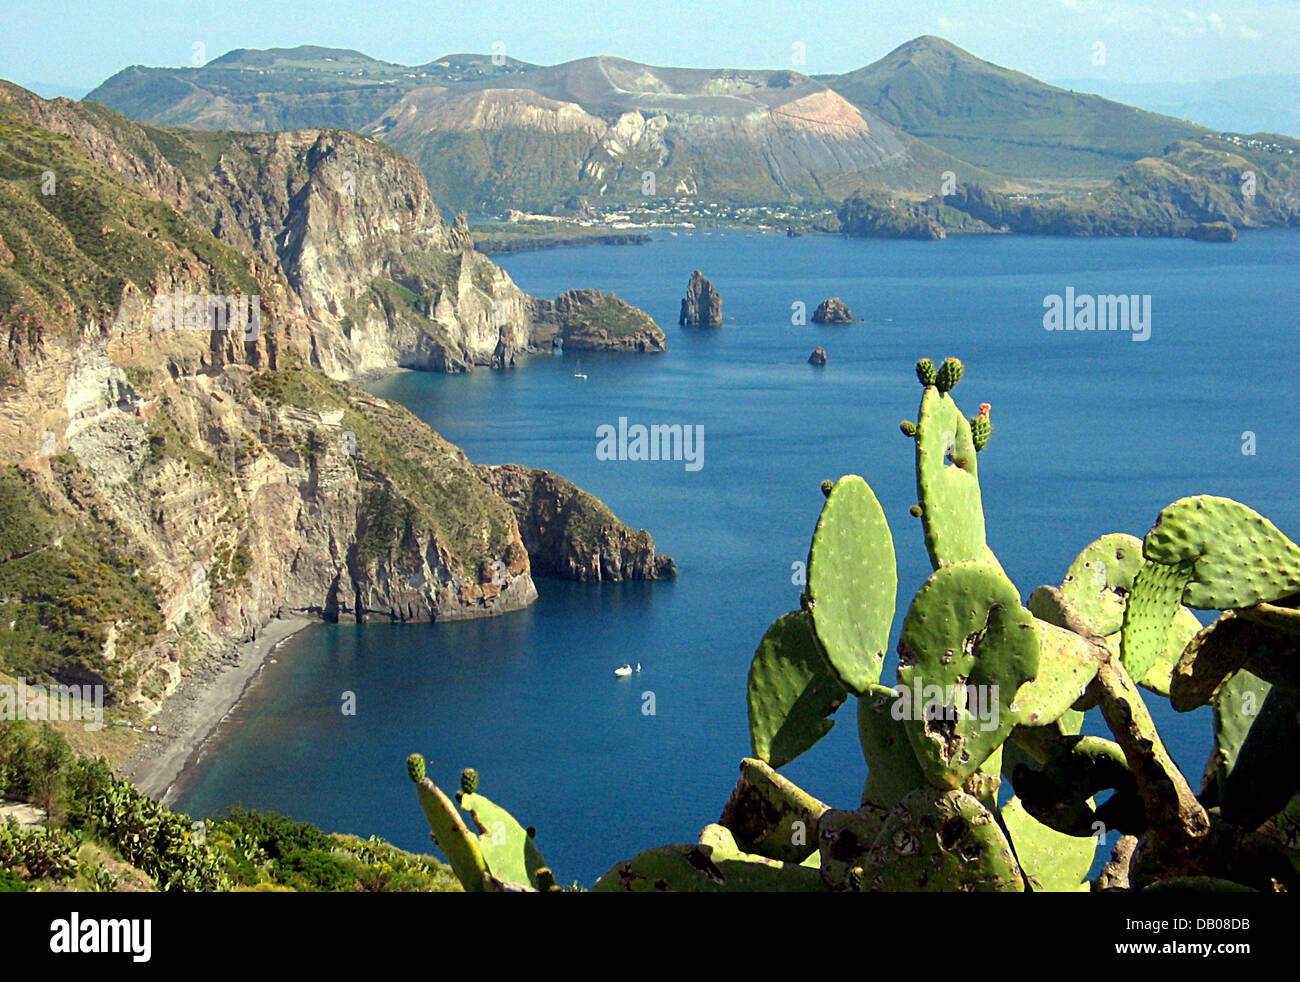 Das Bild zeigt die Punta di Levante und die Neibouring Insel Vulcano von der Insel Lipari, Italien, 1. Juni 2007. Die Äolischen Inseln sind vulkanischen und daher großes Erdbeben. Foto: Rolf Haid Stockfoto